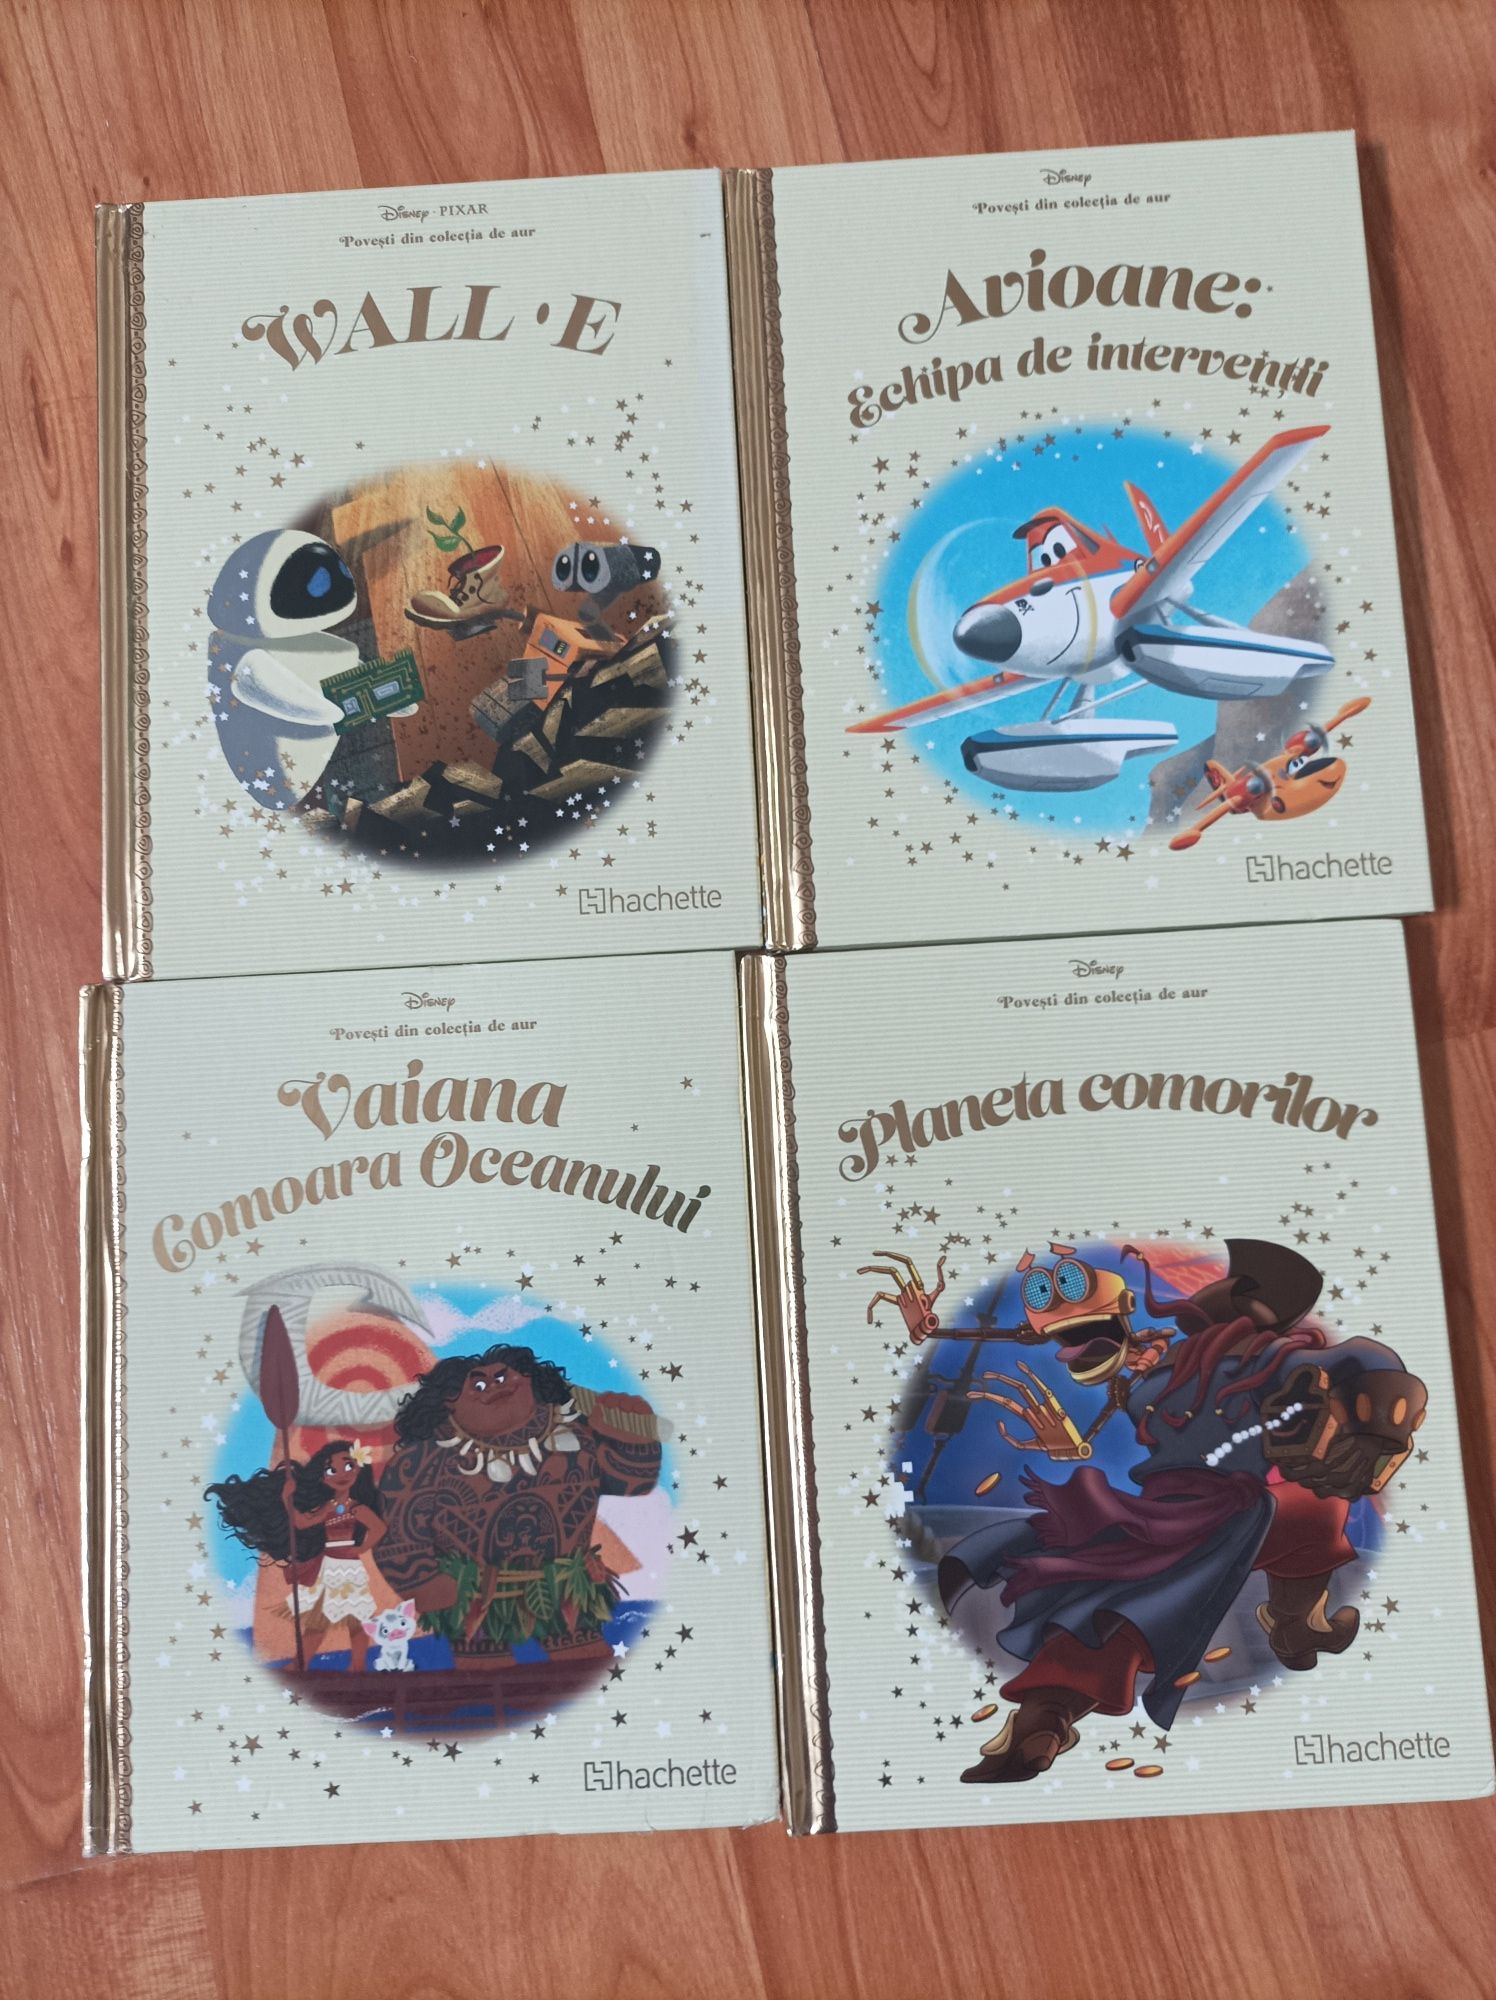 Cărți colecția Disney Povesti din colecția de aur